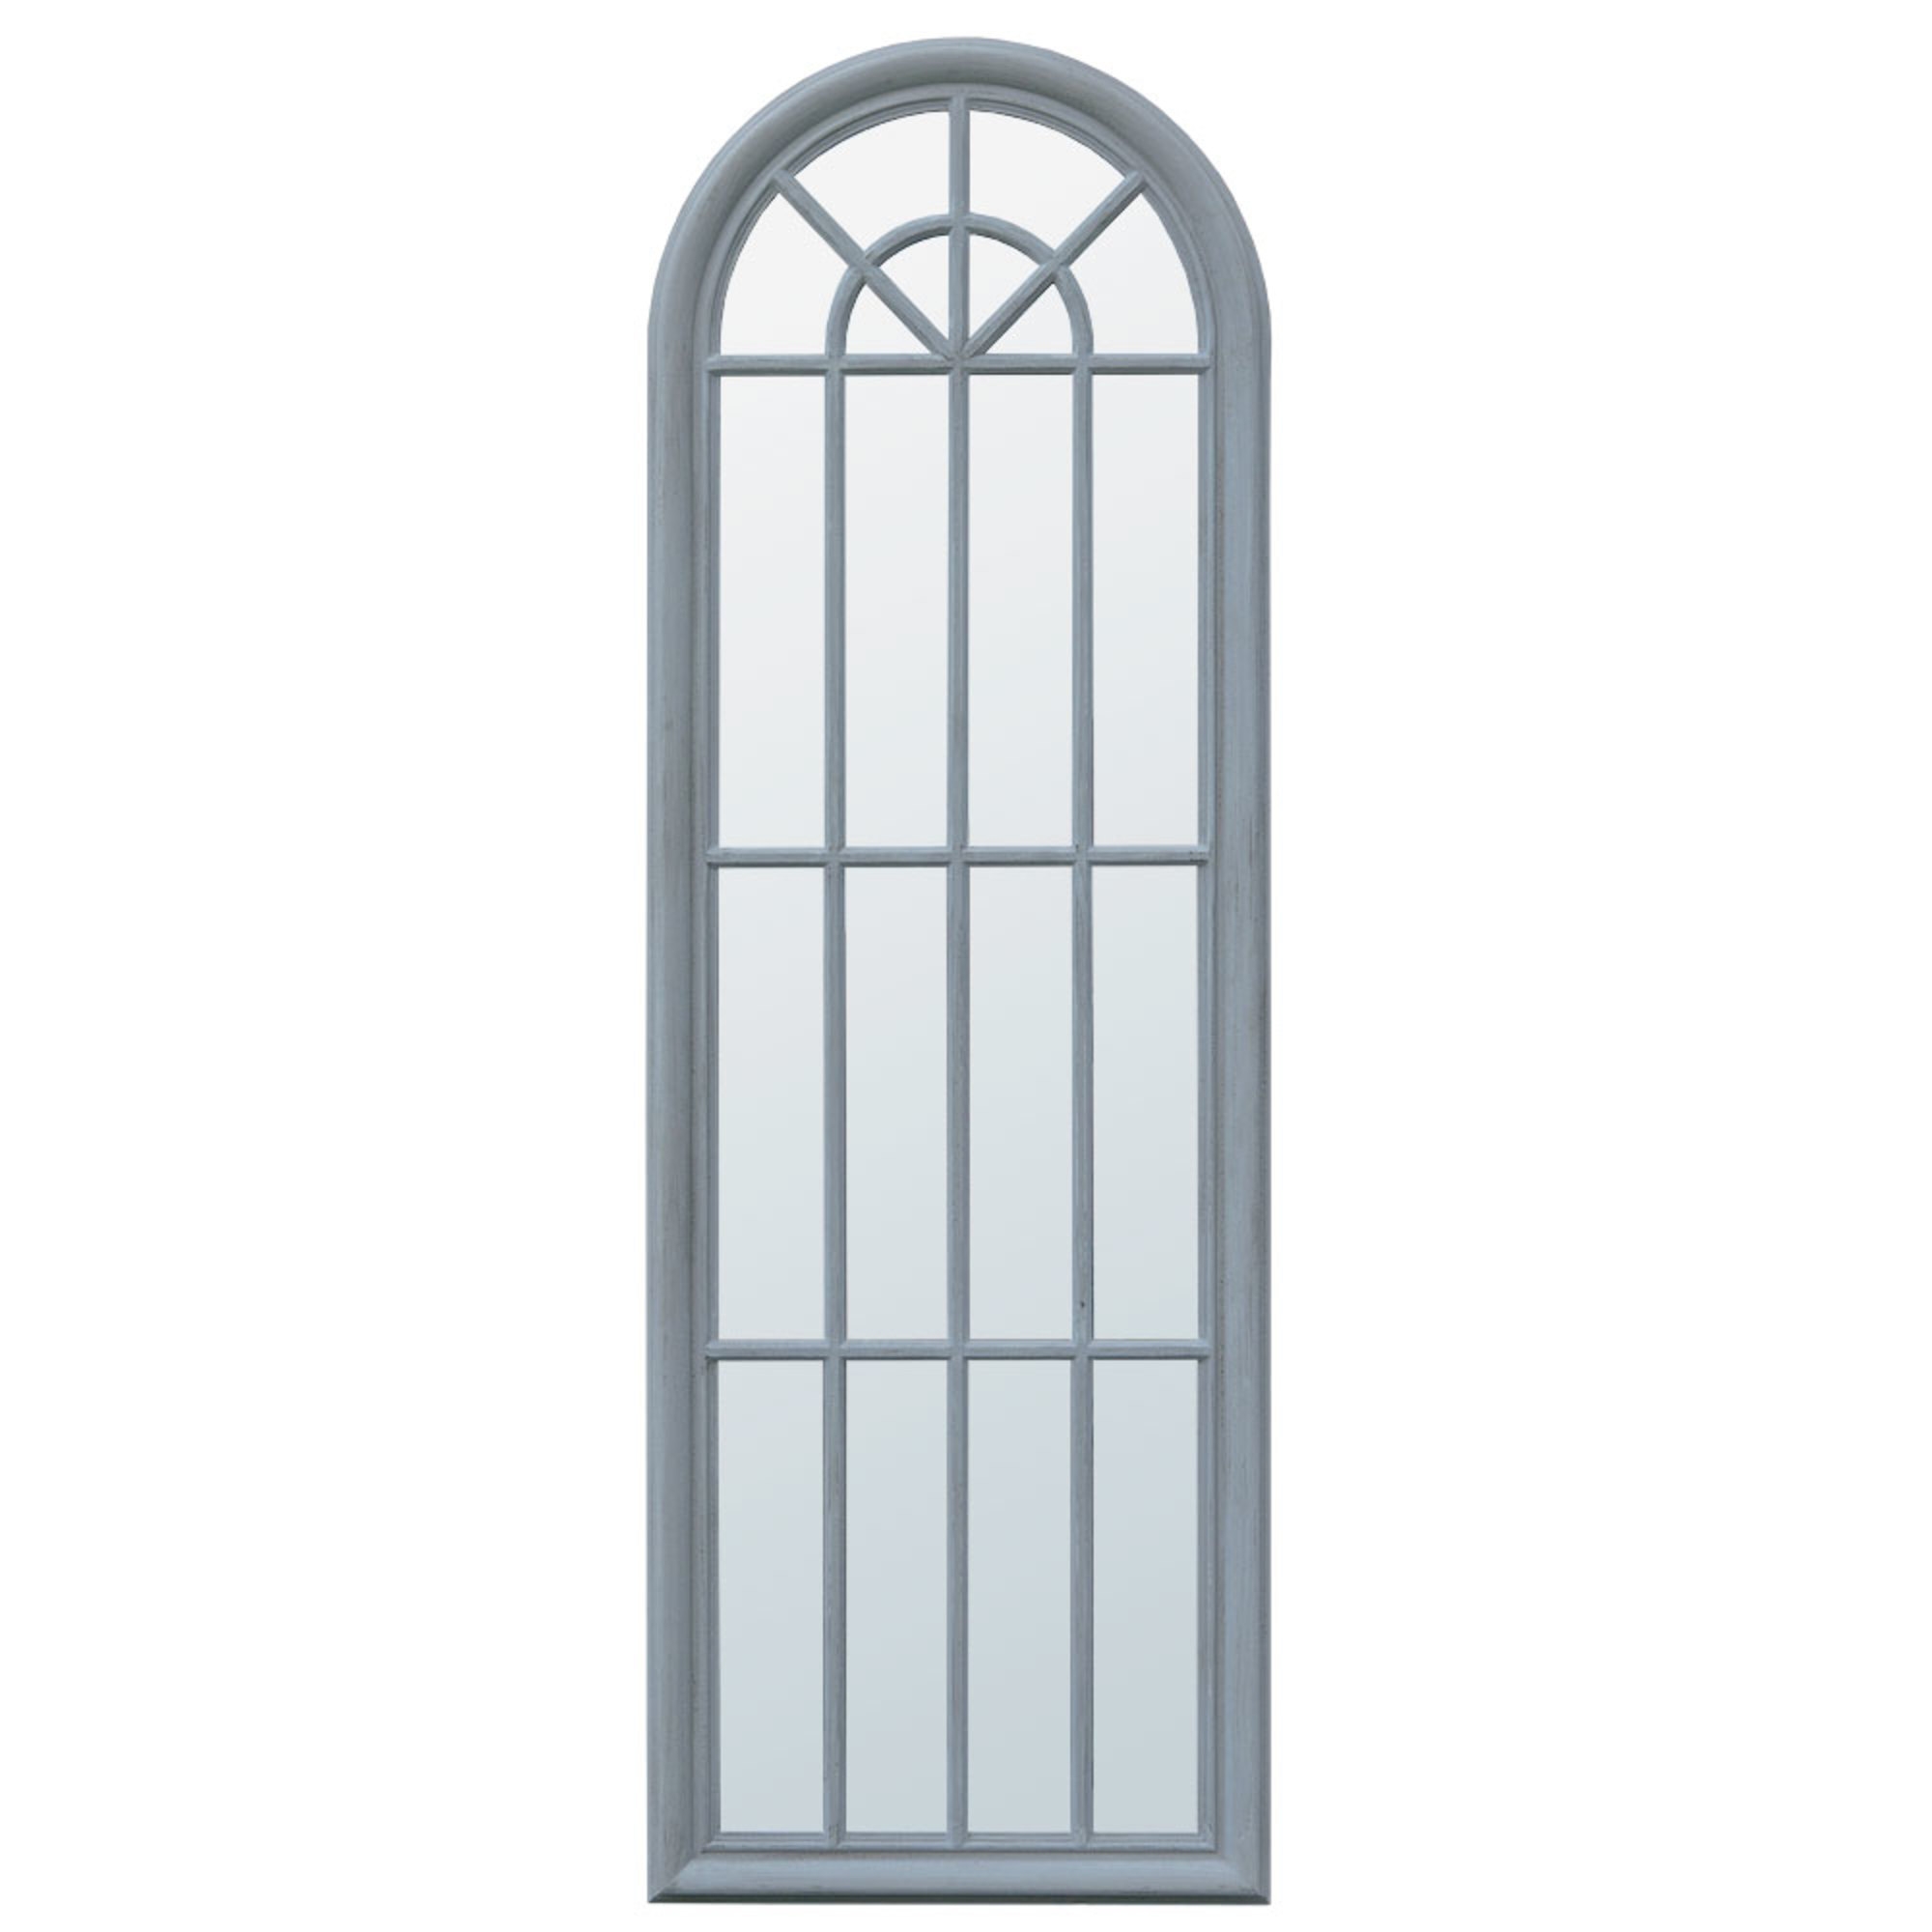 Architectural Floor Standing Window Mirror - Soft Grey 